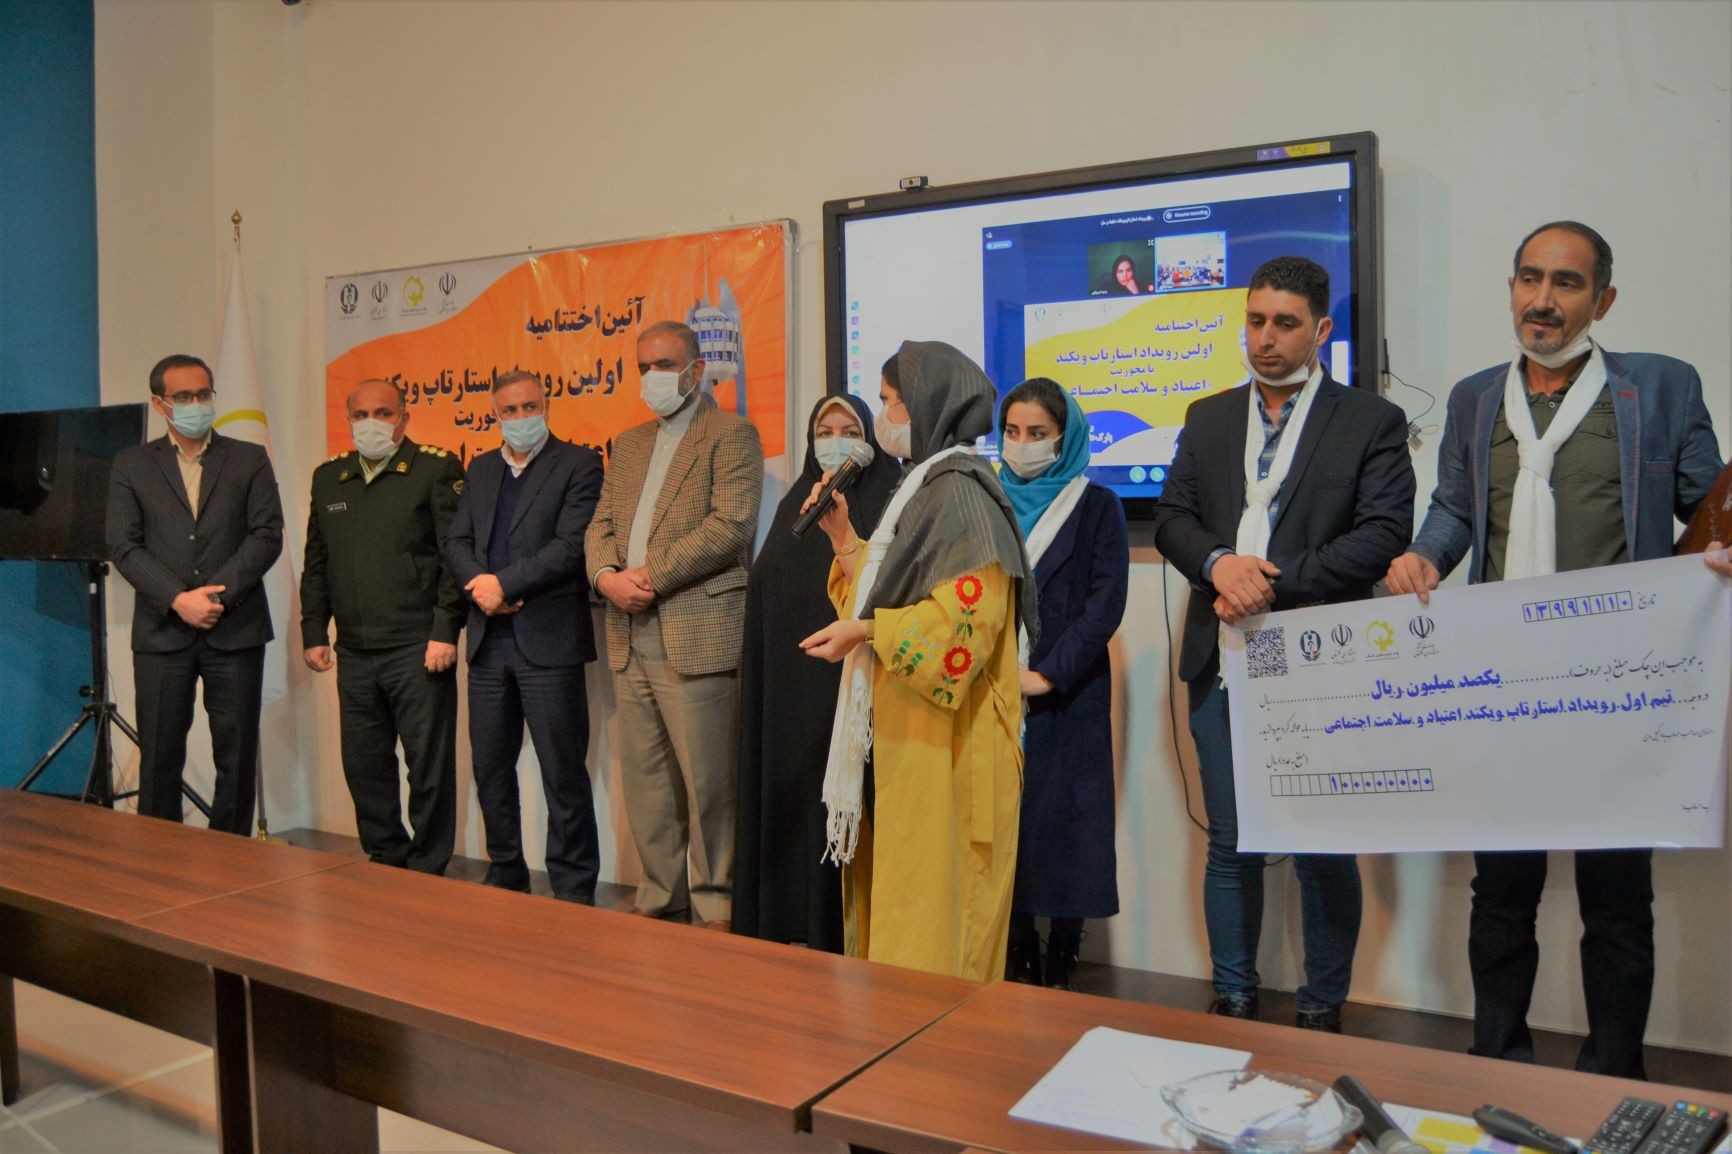 پوشش تصویری کامل از آئین اختتامیه نخستین رویداد مجازی استارتاپی با محوریت "اعتیاد و سلامت اجتماعی" در استان گلستان